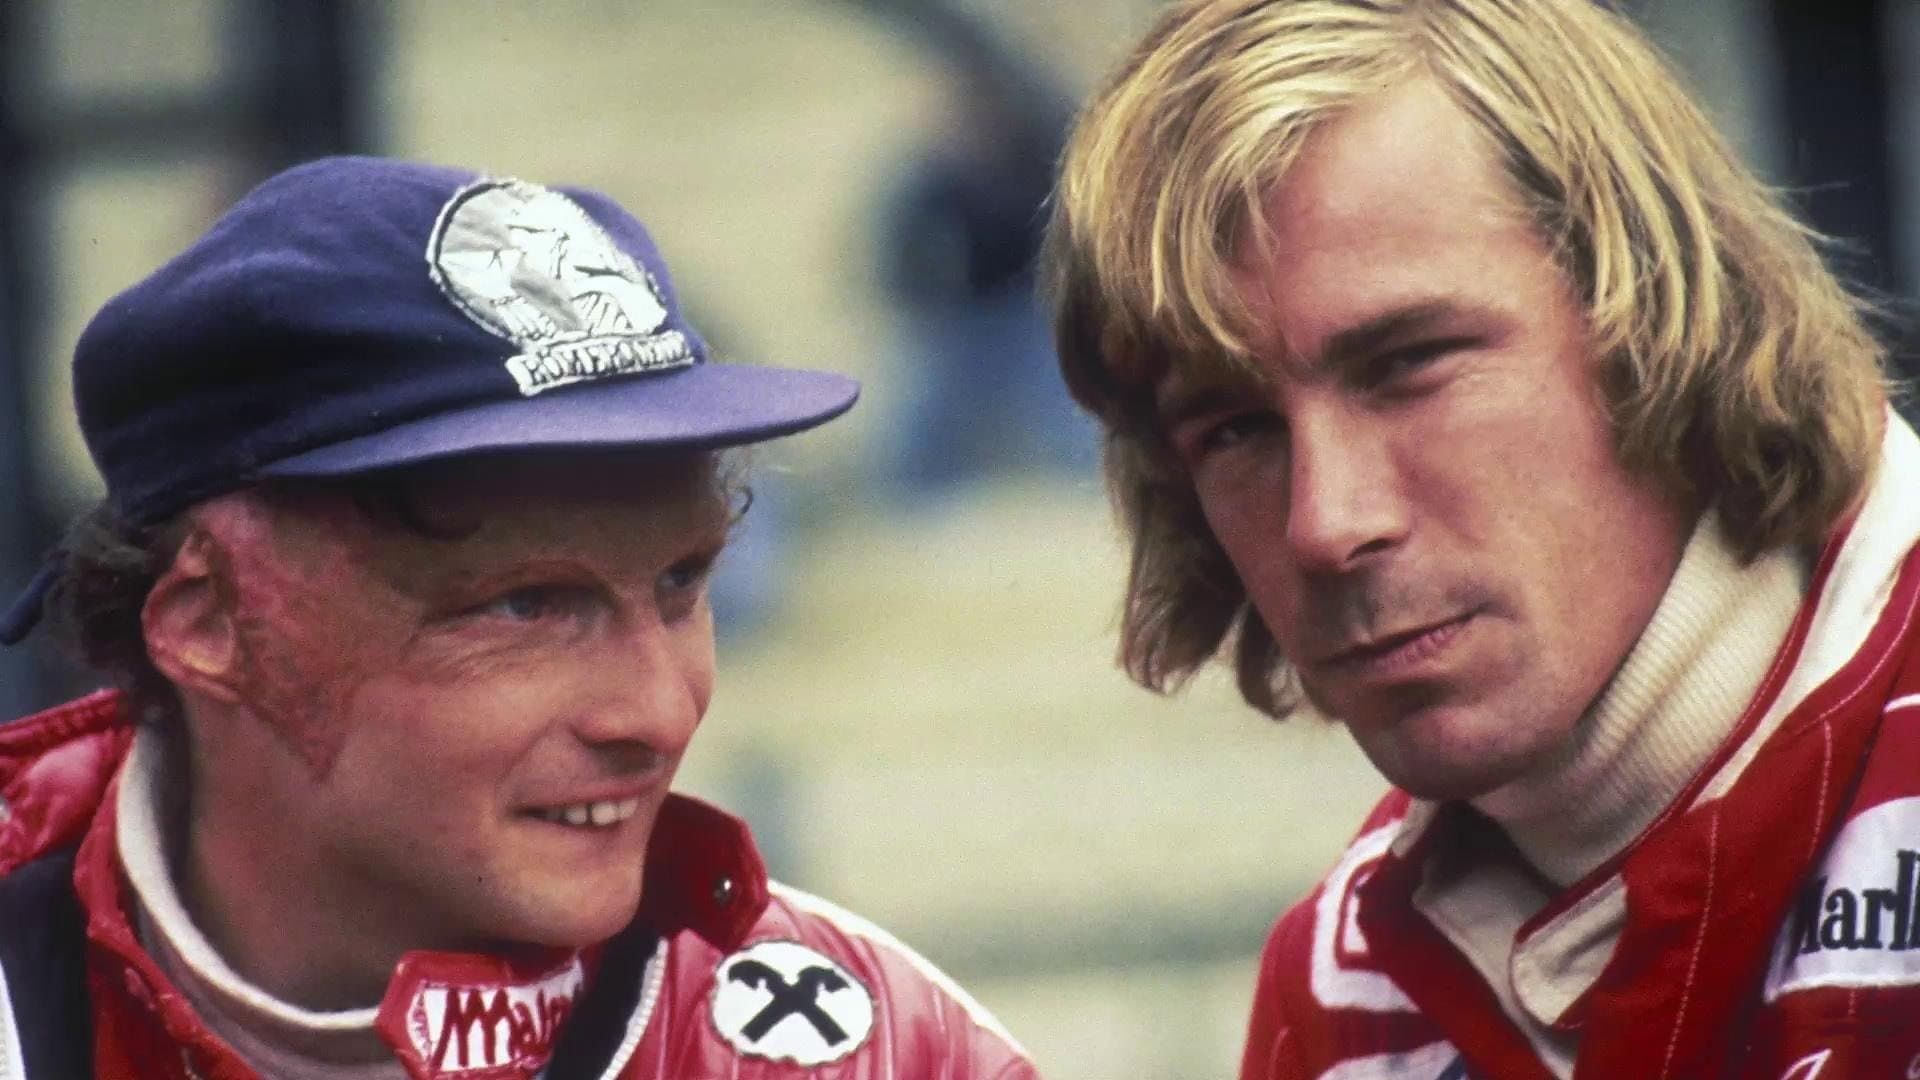 Hunt vs Lauda: F1's Greatest Racing Rivals Backdrop